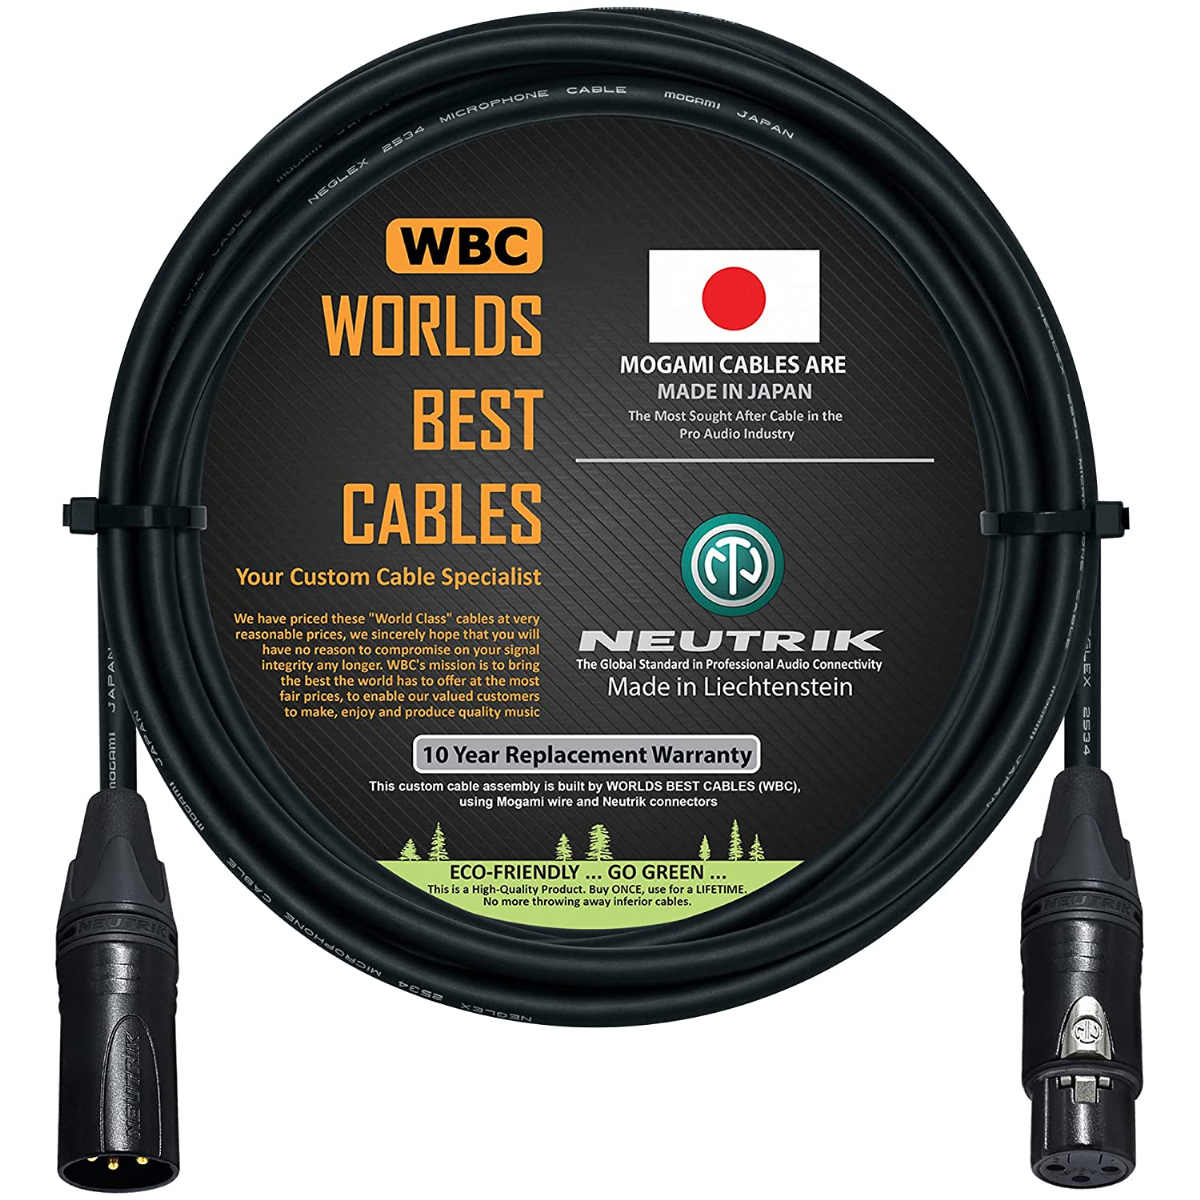 Mogami Xlr Cable ราคาถูก ซื้อออนไลน์ที่ - มิ.ย. 2022 | Lazada.co.th